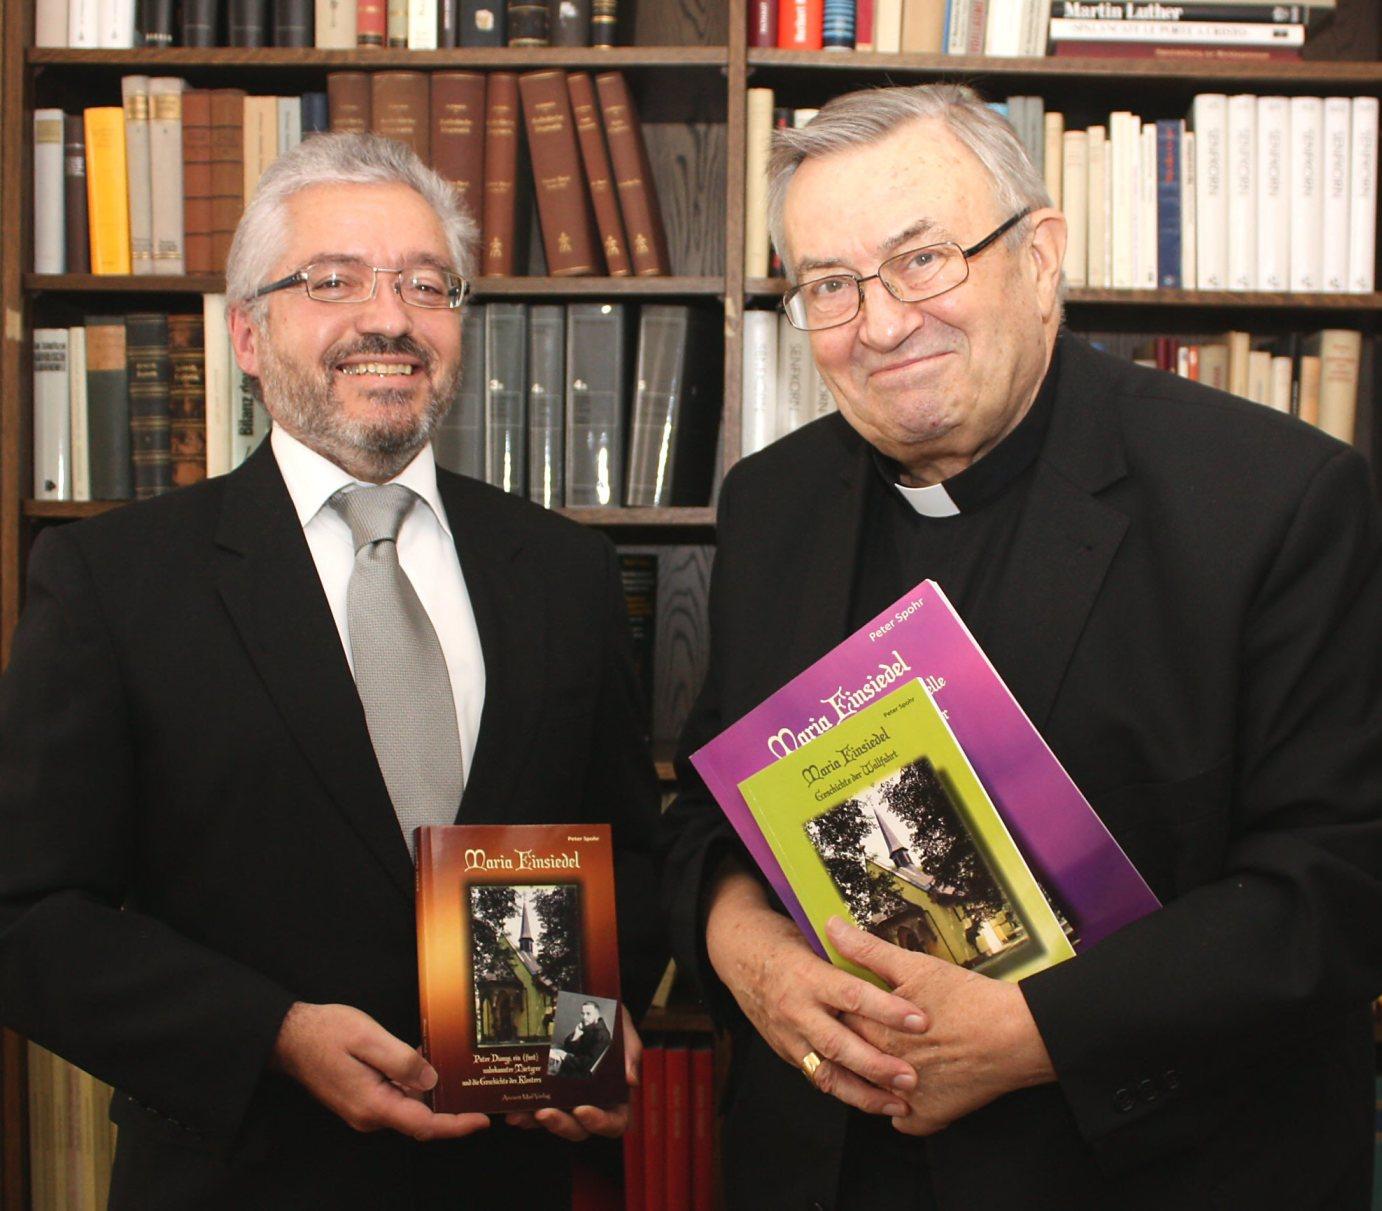 Mainz, 6.9.2013: Peter Spohr (l.) überreichte sein Buch über Kloster Einsiedel an Kardinal Karl Lehmann.